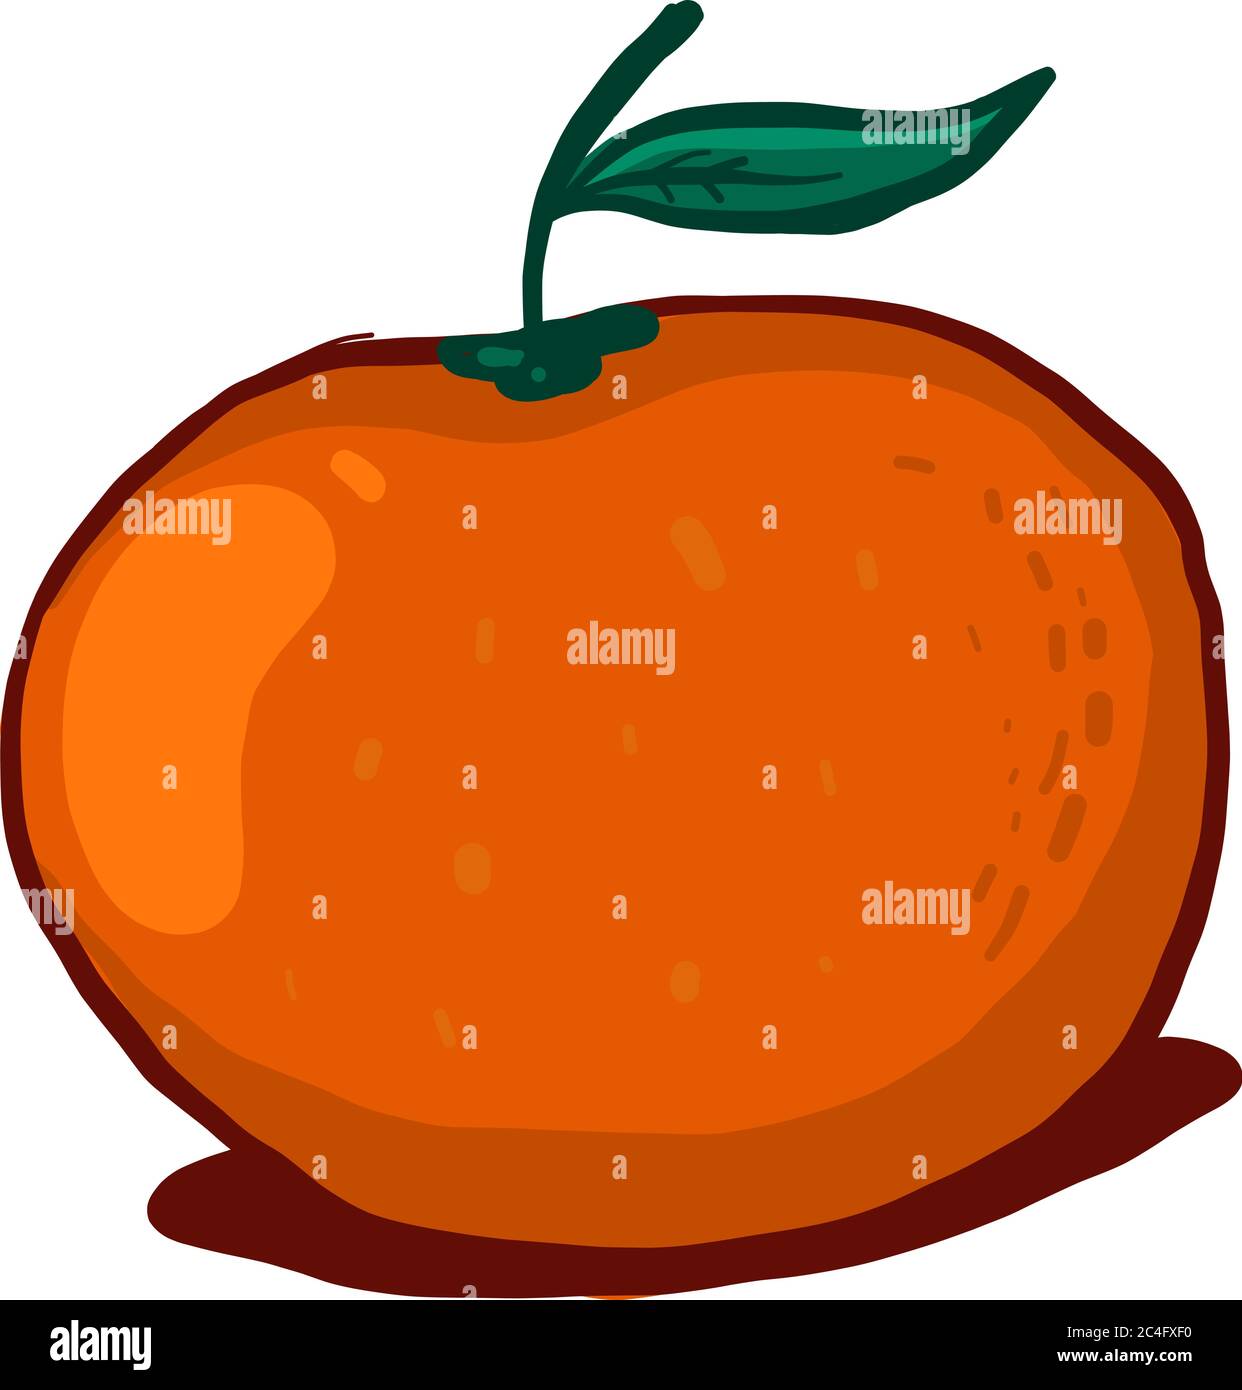 Orange mandarin, illustration, vector on white background Stock Vector